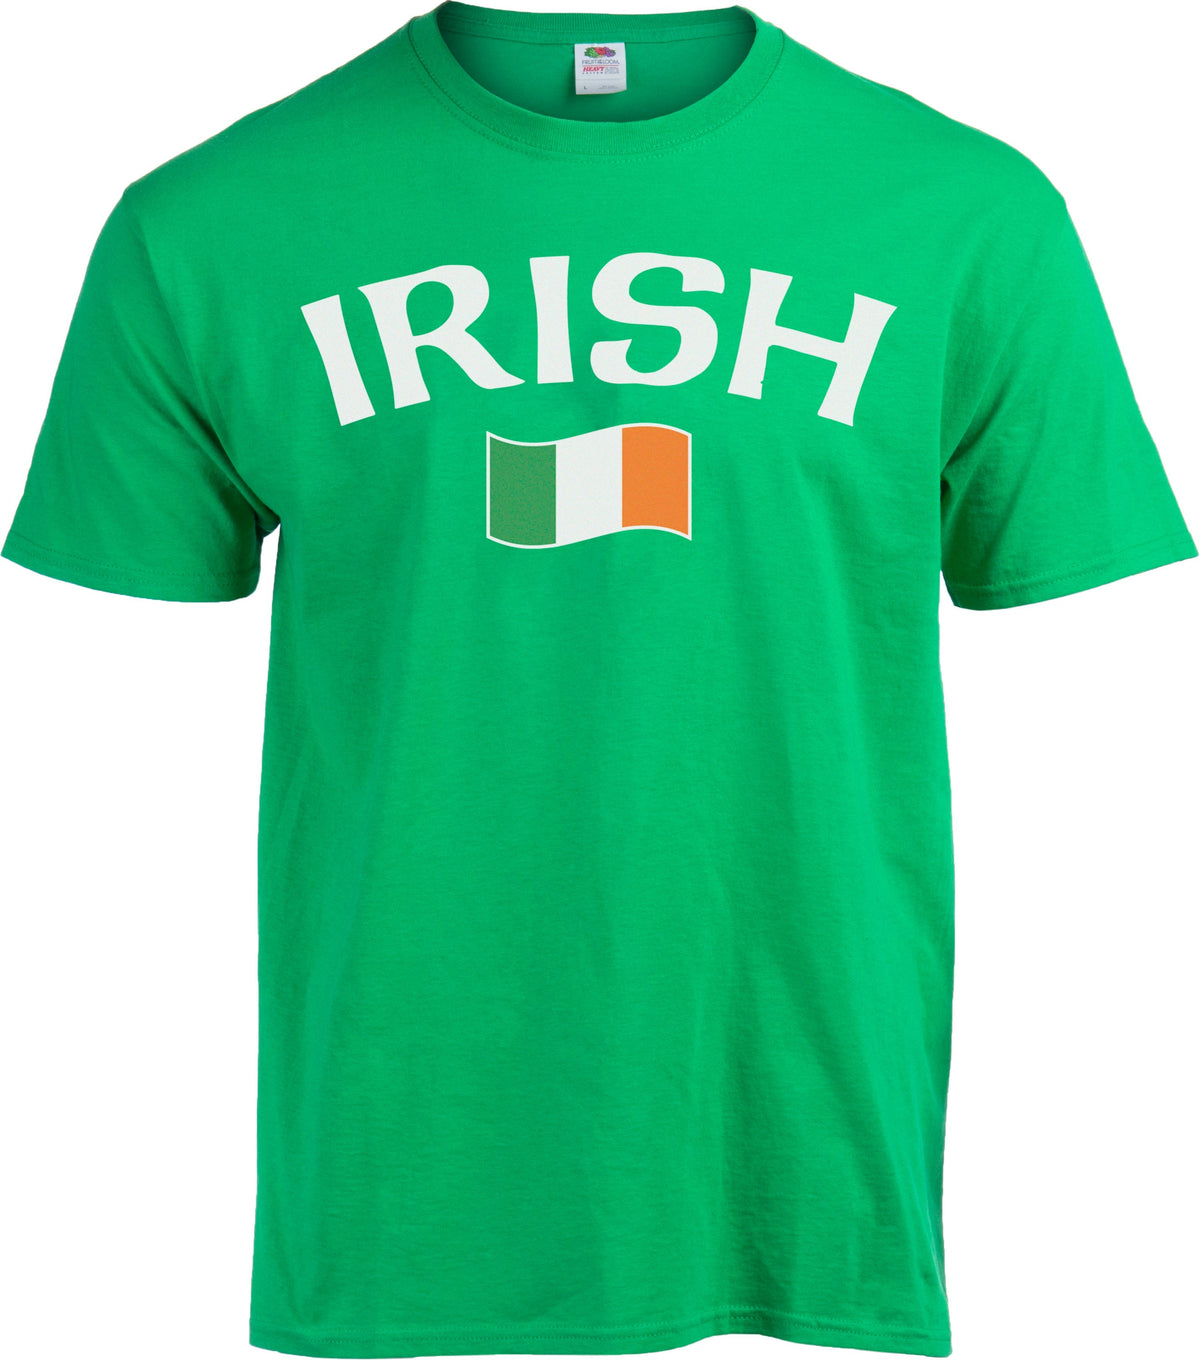 Irish Pride - Irish Flag - Ireland Love St. Patrick's Day T-shirt - Kid's/Youth